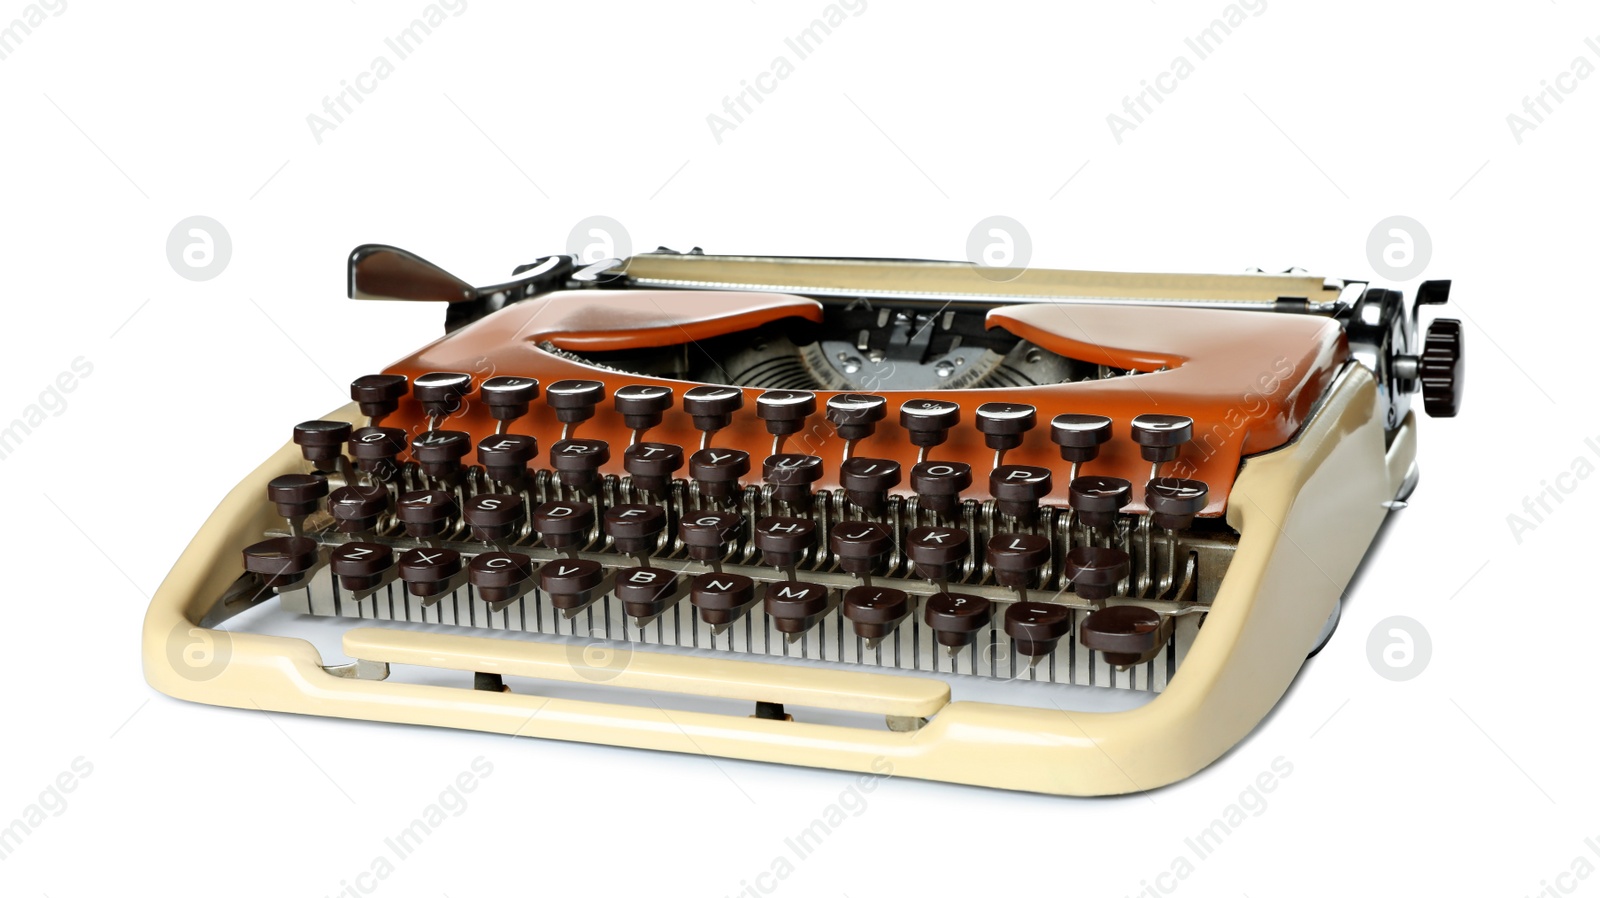 Image of Old vintage typewriter machine isolated on white